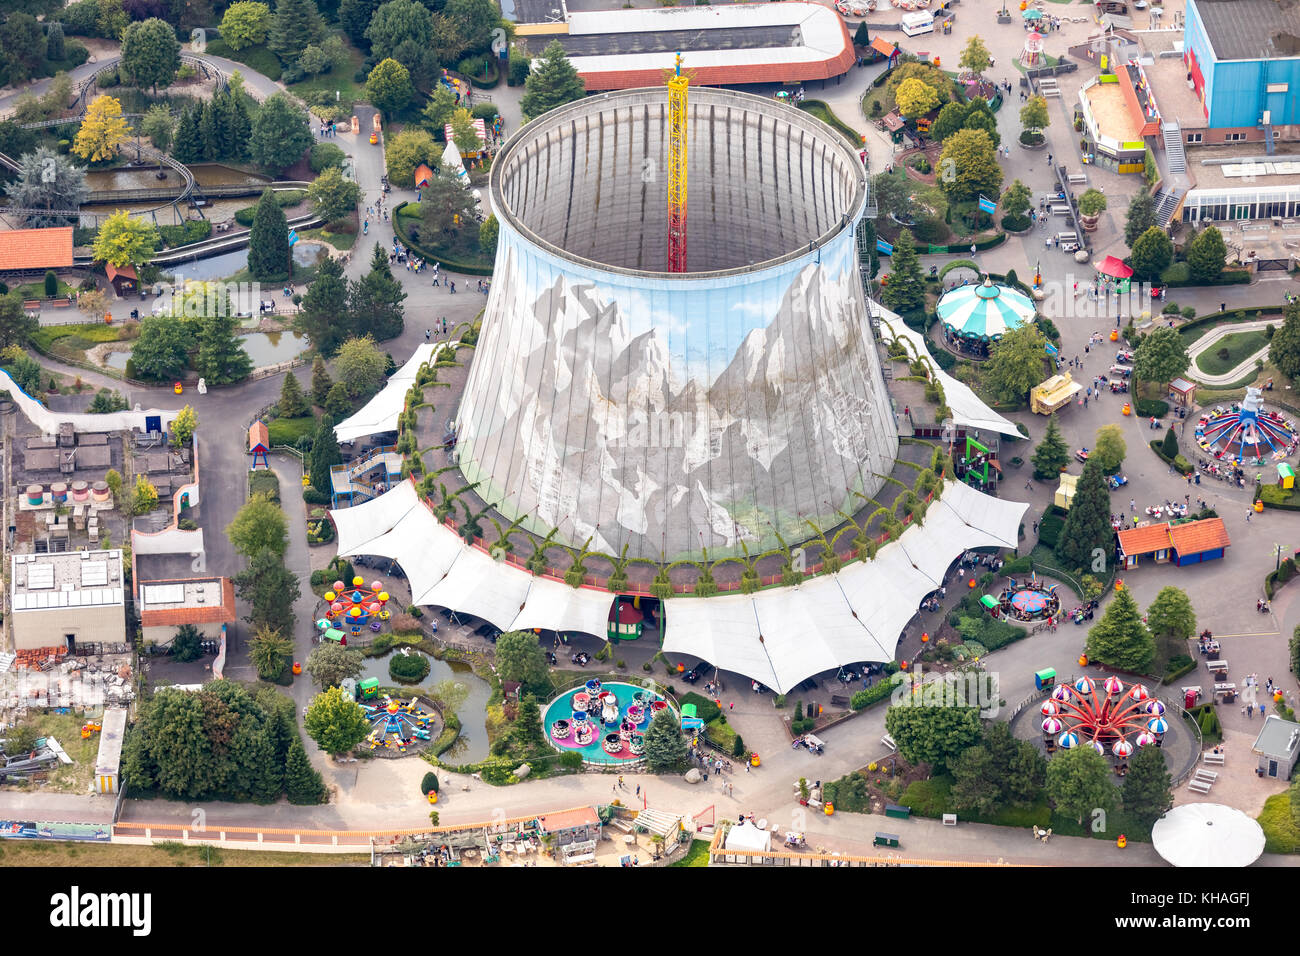 Miniatur Wunderland kalkar, amusement park, ancienne centrale électrique nucléaire kalkar sur le Rhin, tour de refroidissement, peint sur le Rhin kalkar Banque D'Images